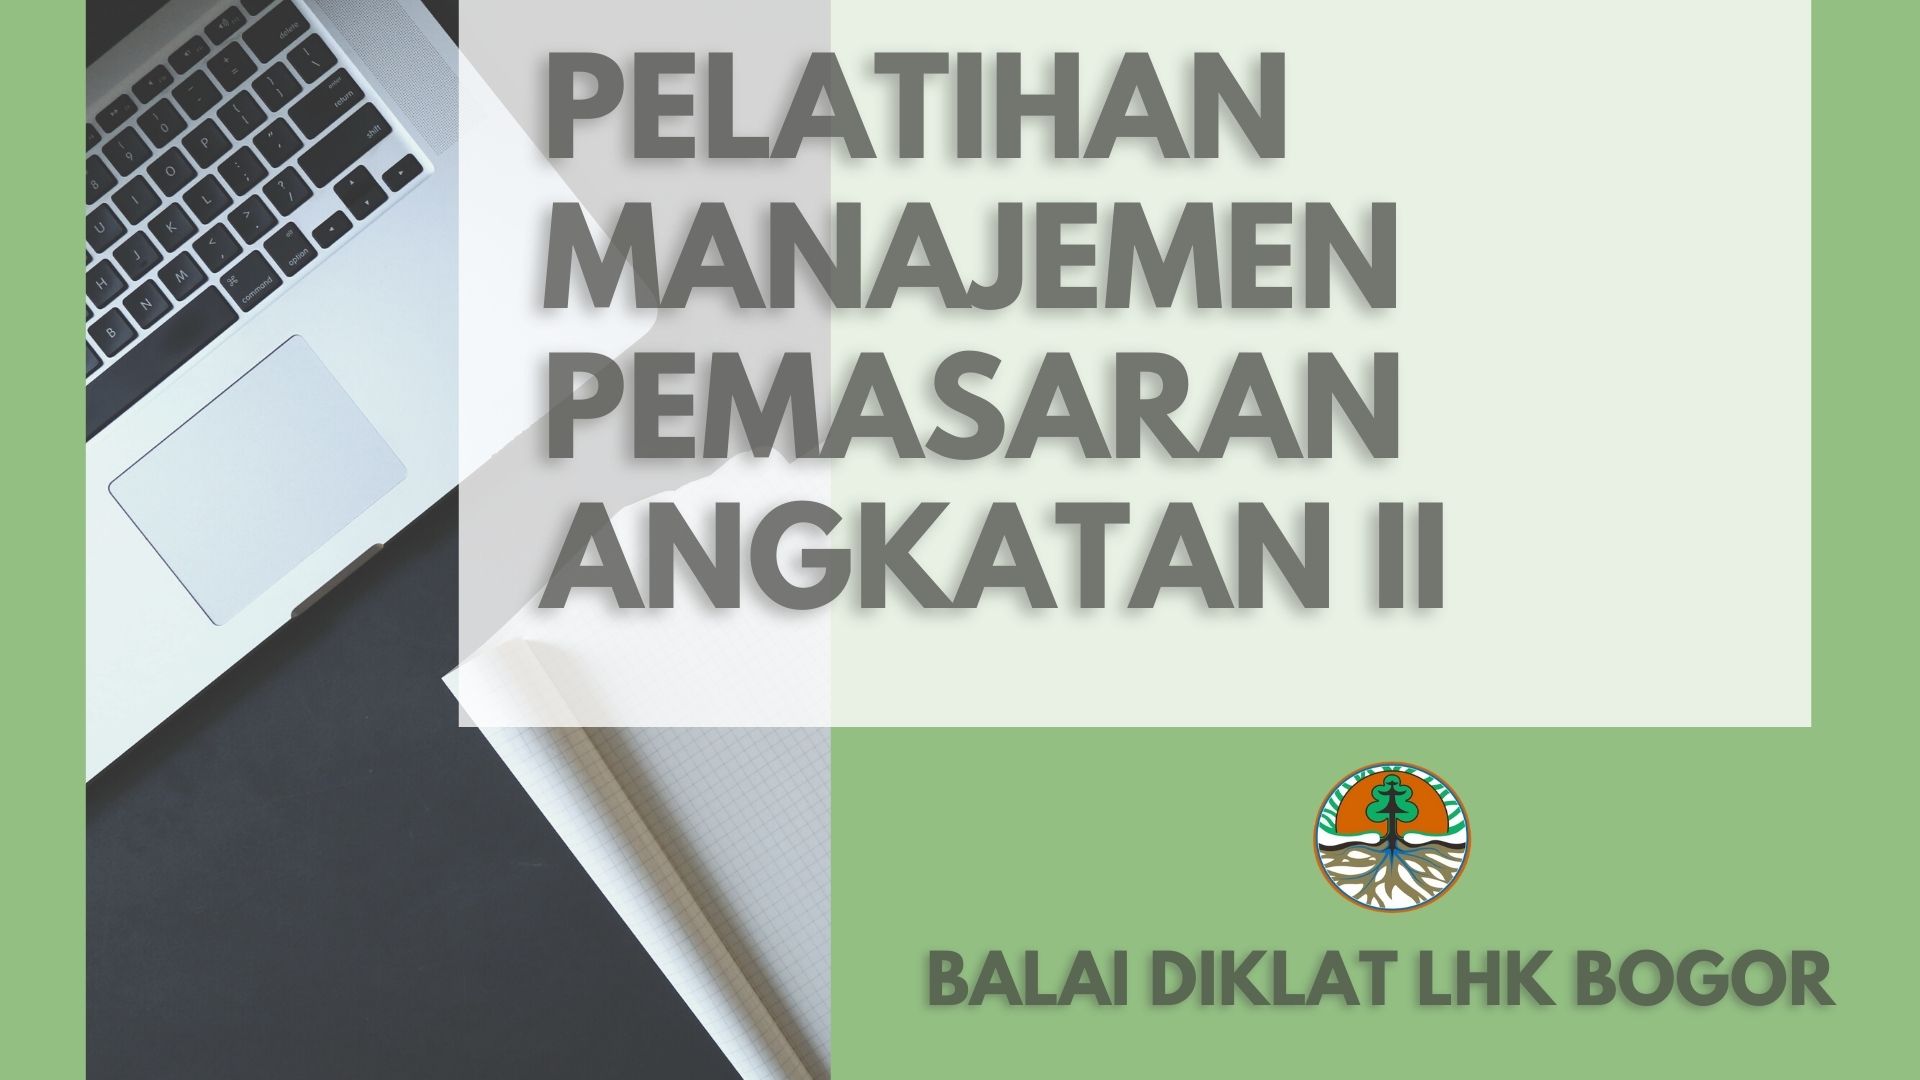 Pelatihan Manajemen Pemasaran Angkatan II di BDLHK Bogor